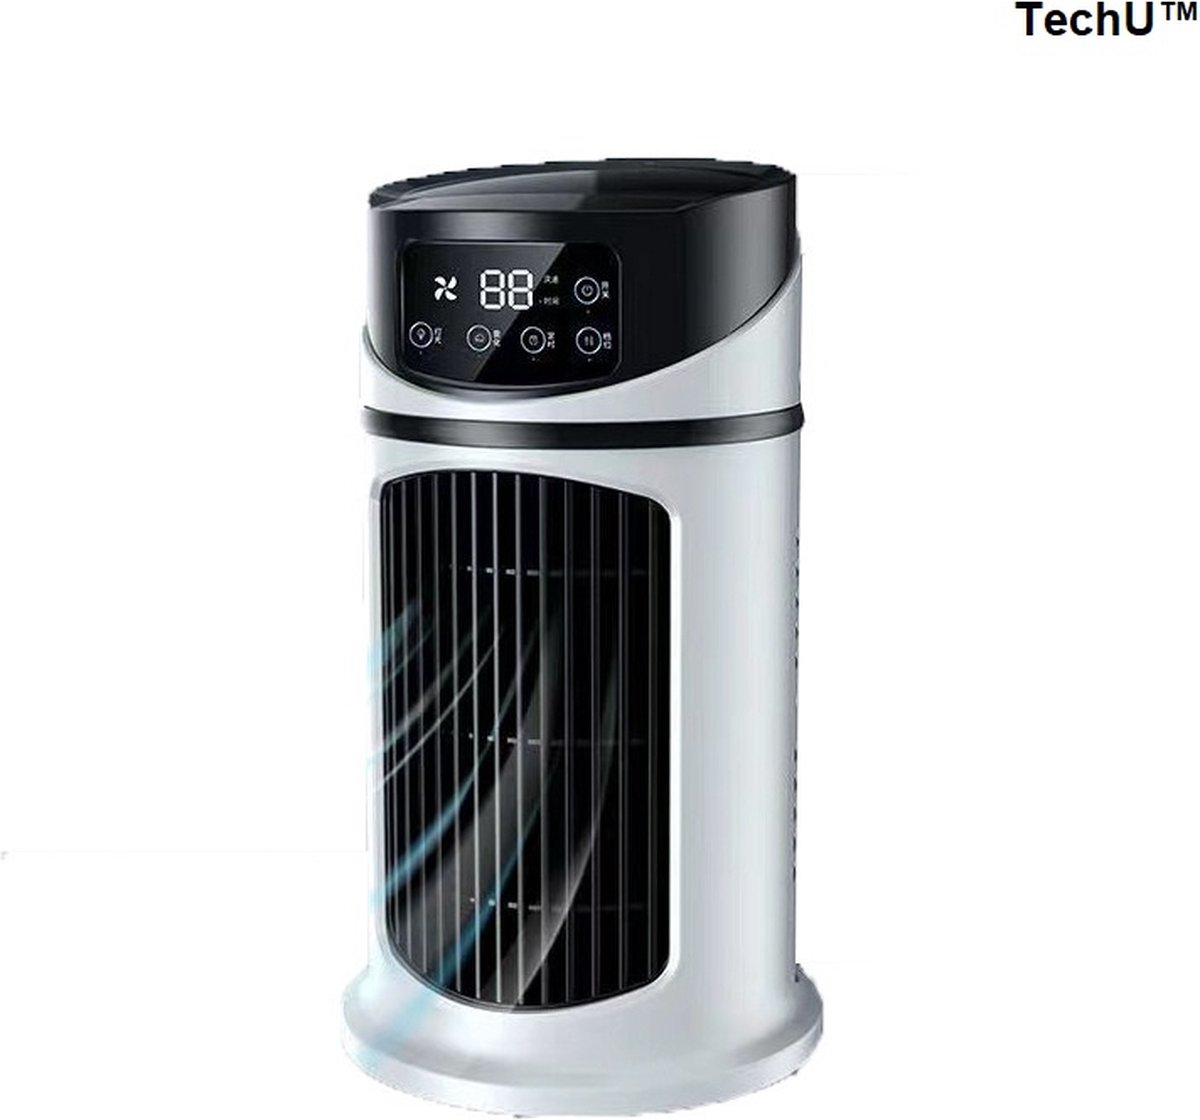 TechU™ Mini Airco 3 in 1 – Koelen, Blazen, Lucht Bevochtigen – Draagbare Luchtkoeler Koelventilator – 6 Wind Snelheden – Met Timing – USB Airconditioner – Wit